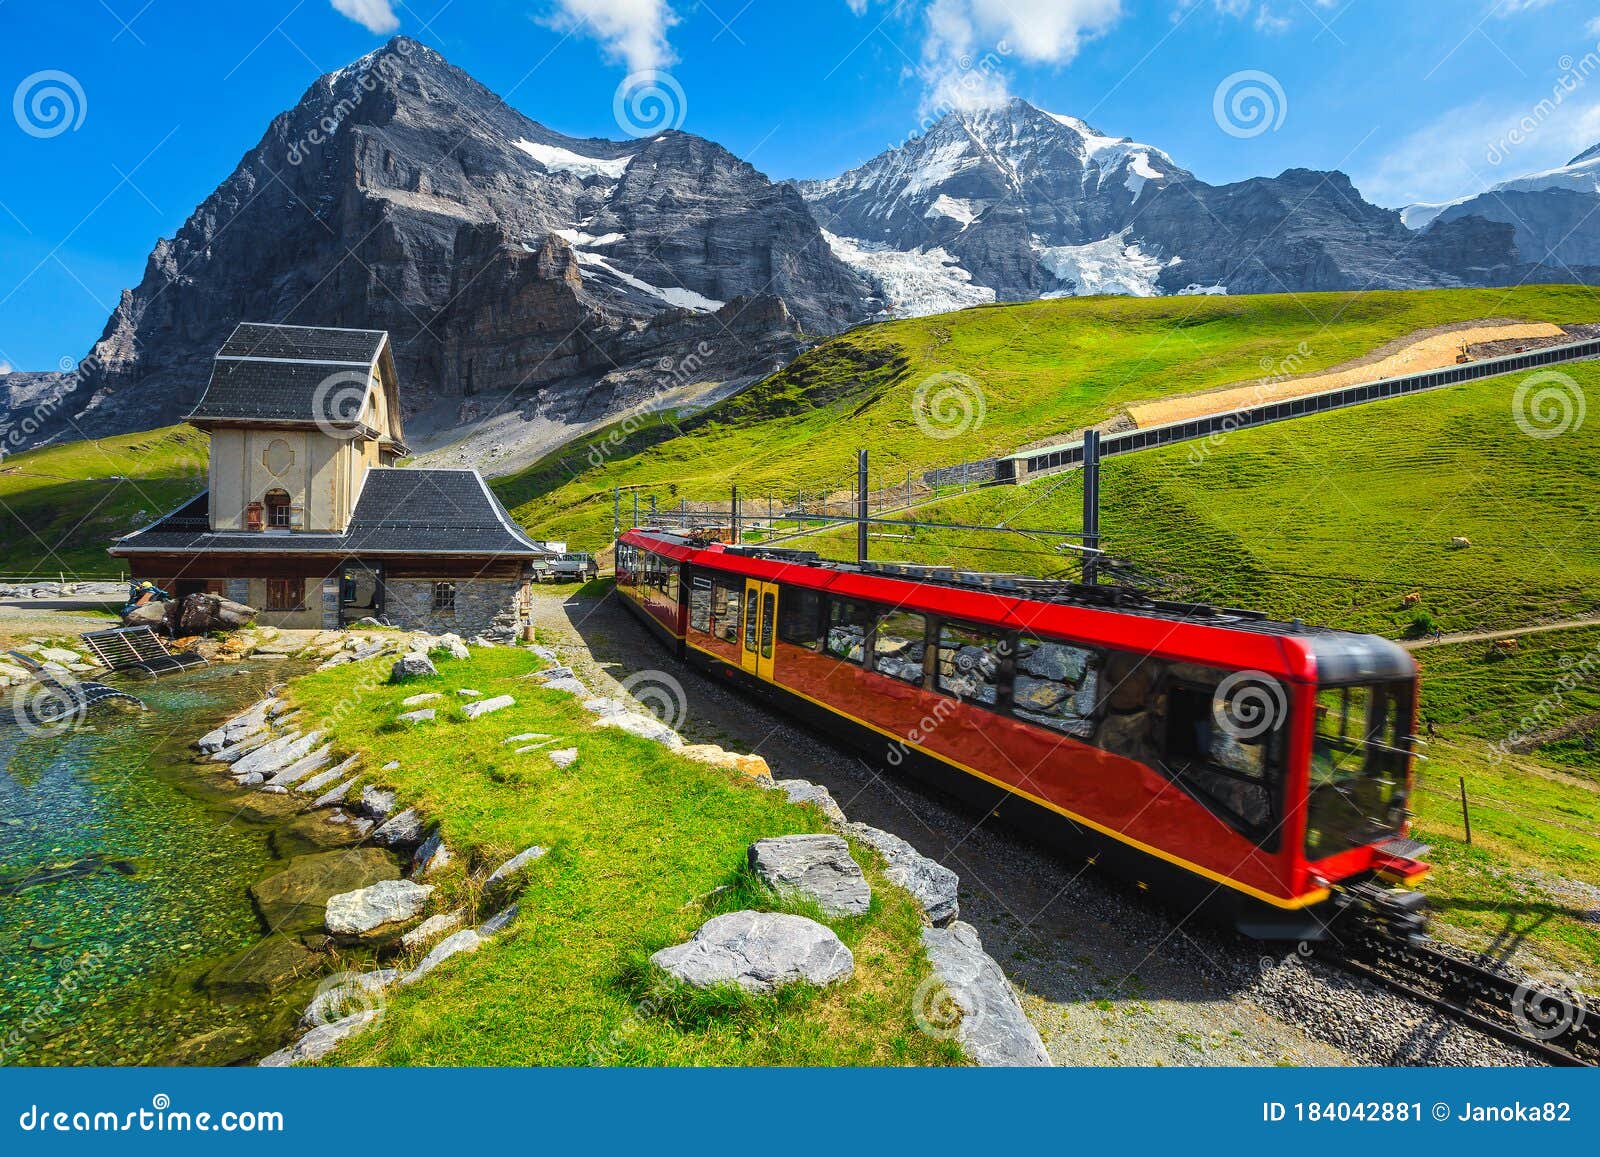 cogwheel tourist train coming down from the mountain, jungfraujoch, switzerland